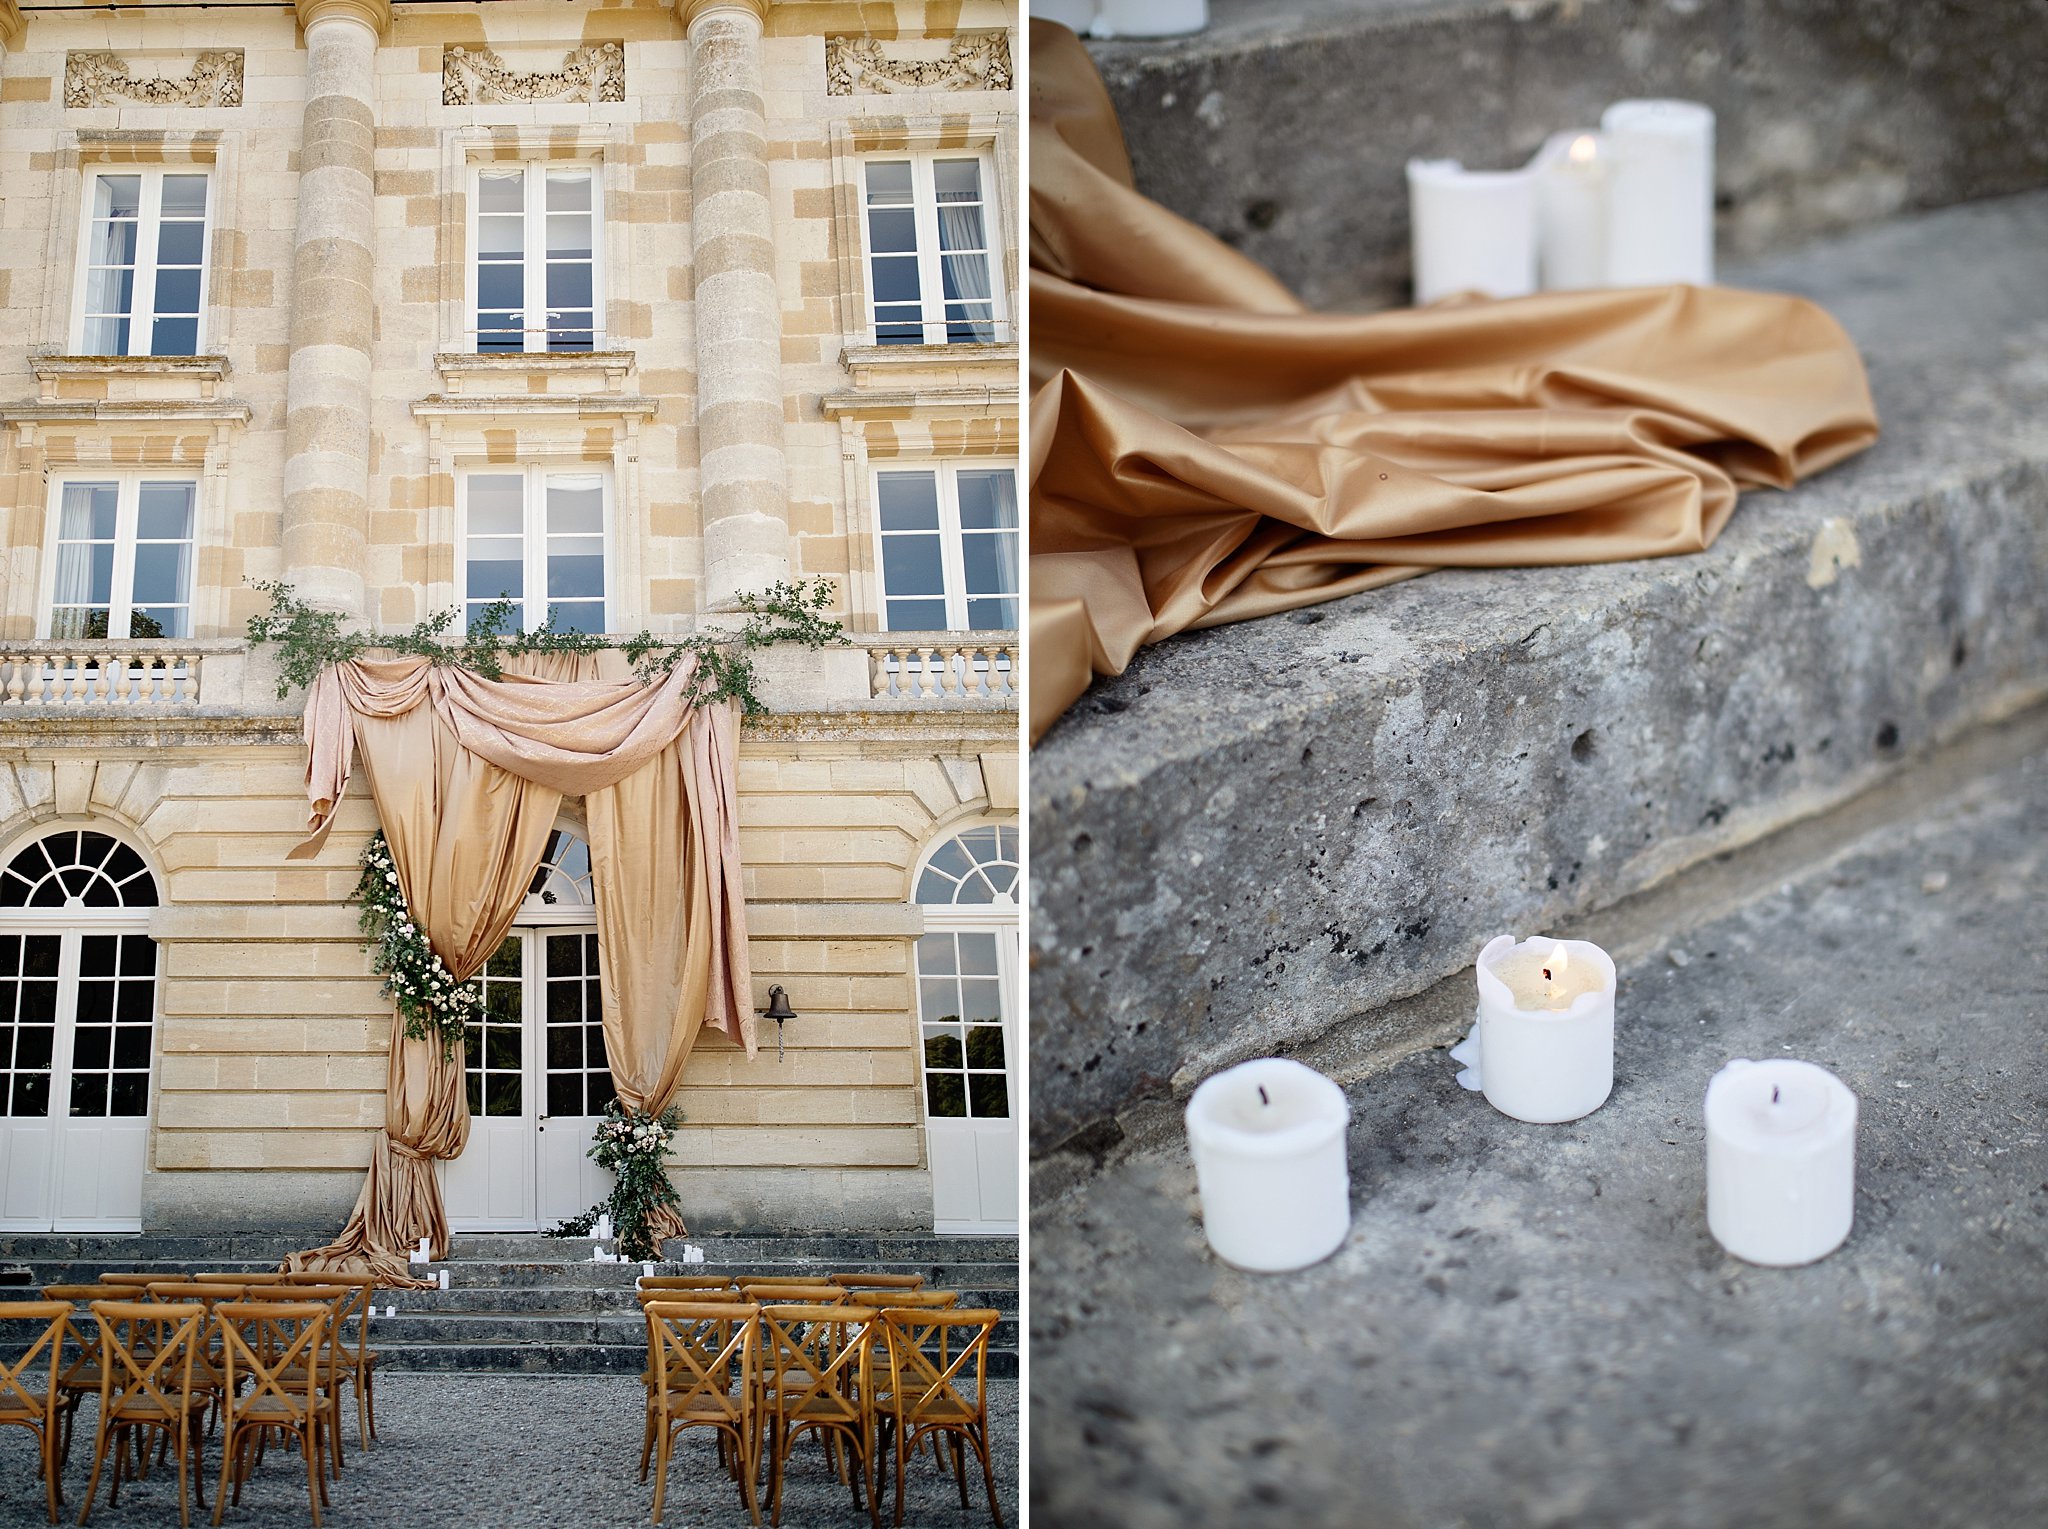 Paris Chateau de Courtomer Wedding Photographer Inspiration